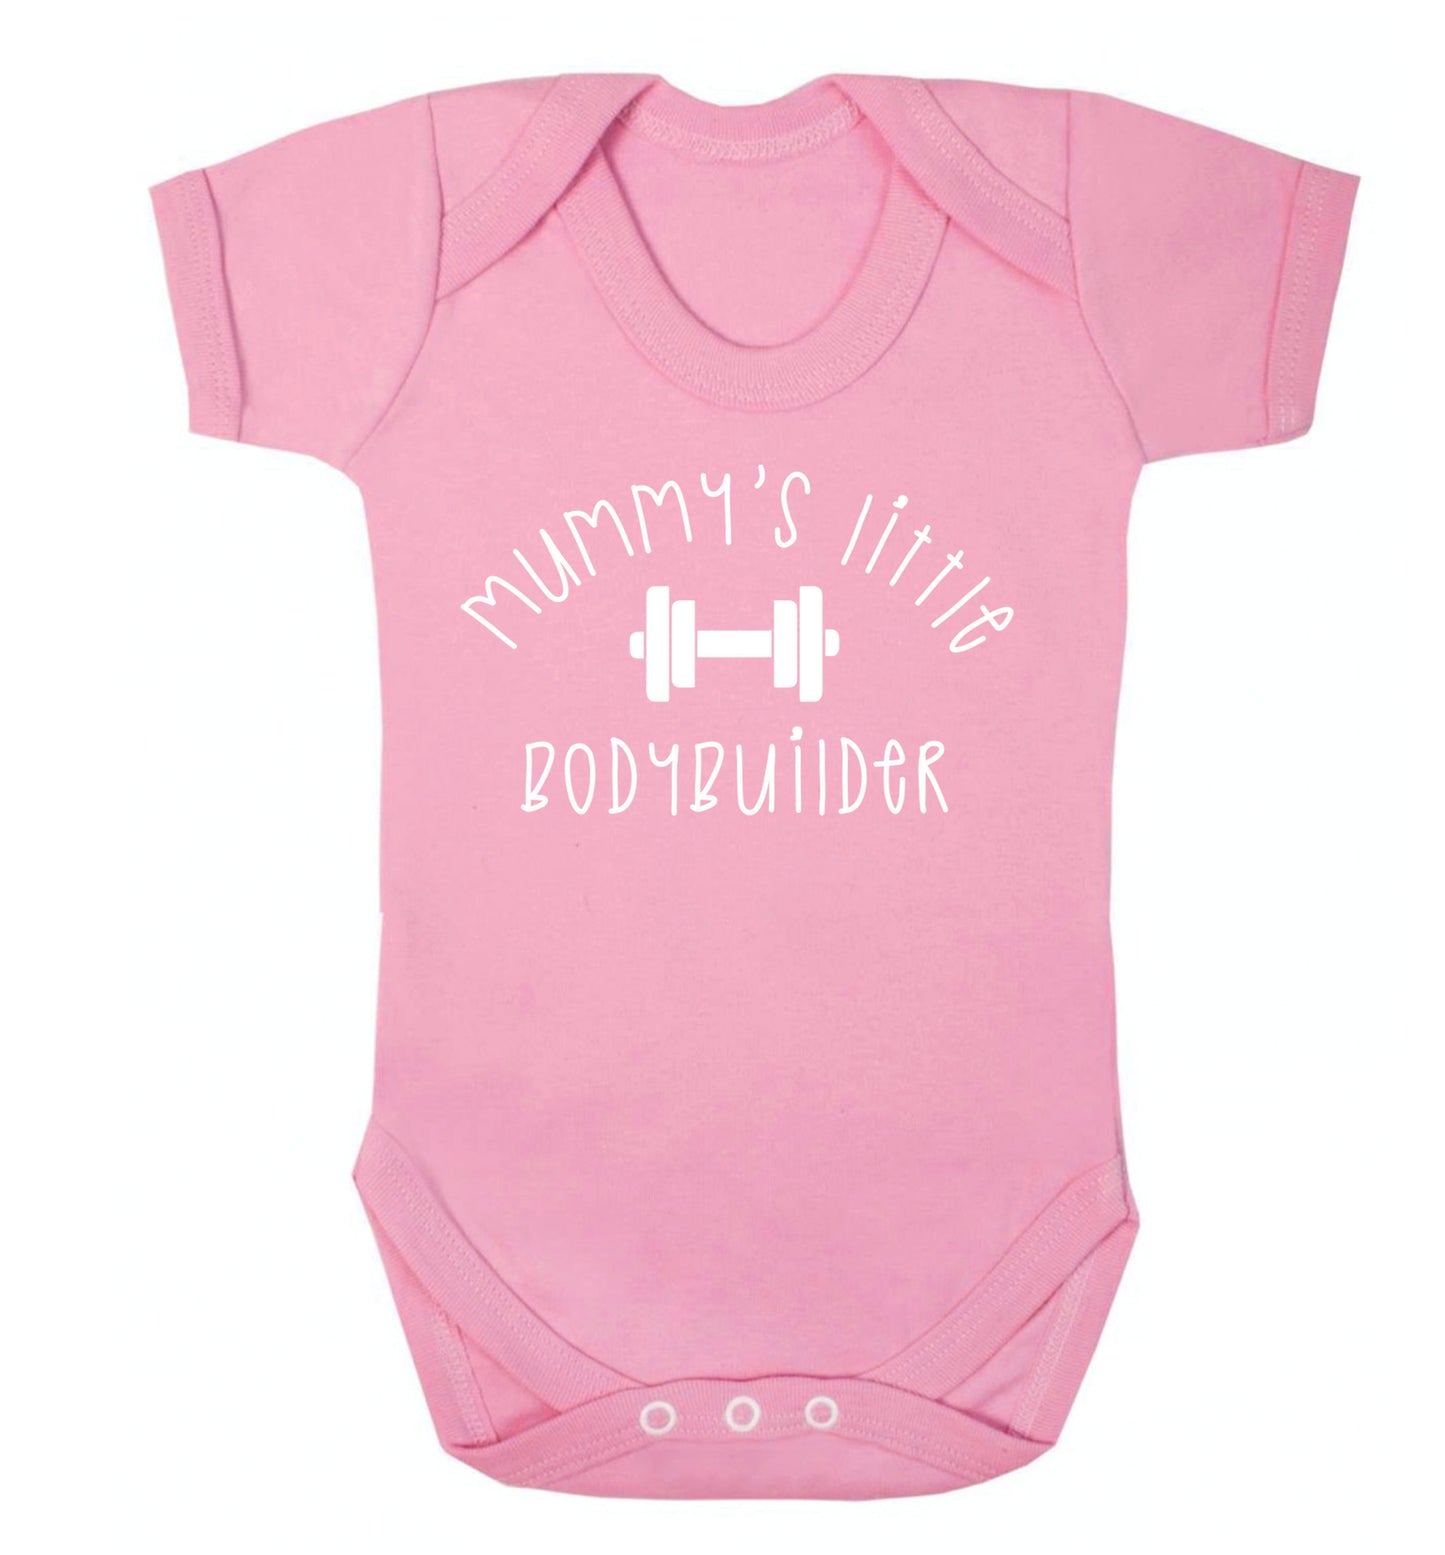 Mummy's little bodybuilder Baby Vest pale pink 18-24 months